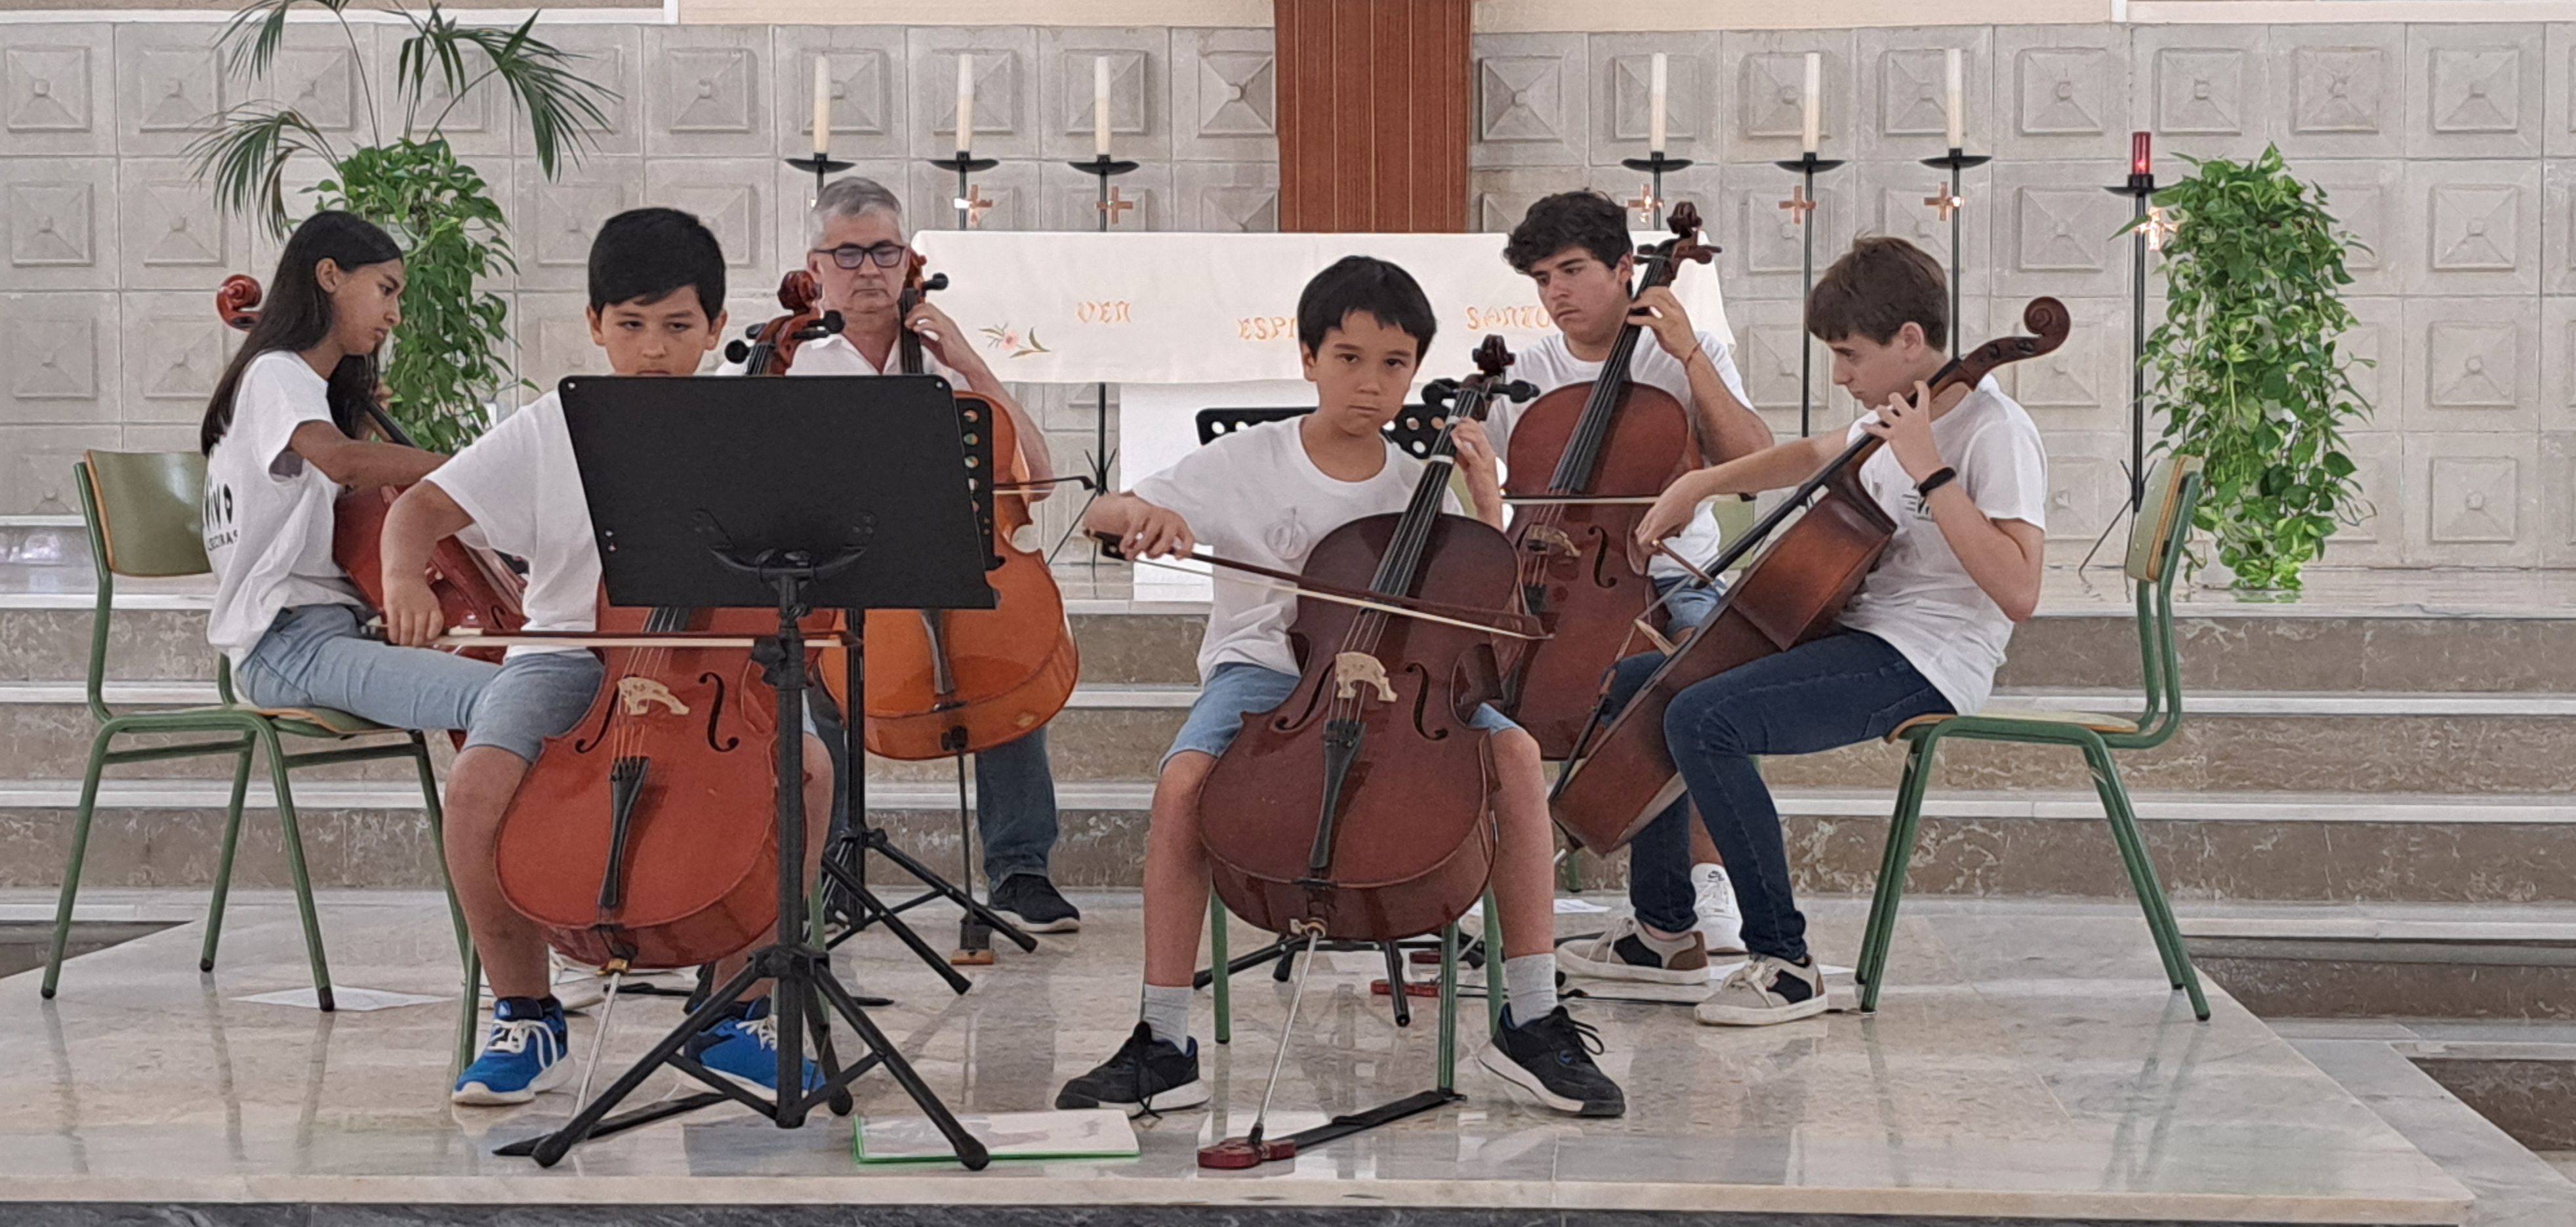 Los alumnos de la Escuela de Música de Barrio Vivo hacen sonar música en la parroquia de La Piñera